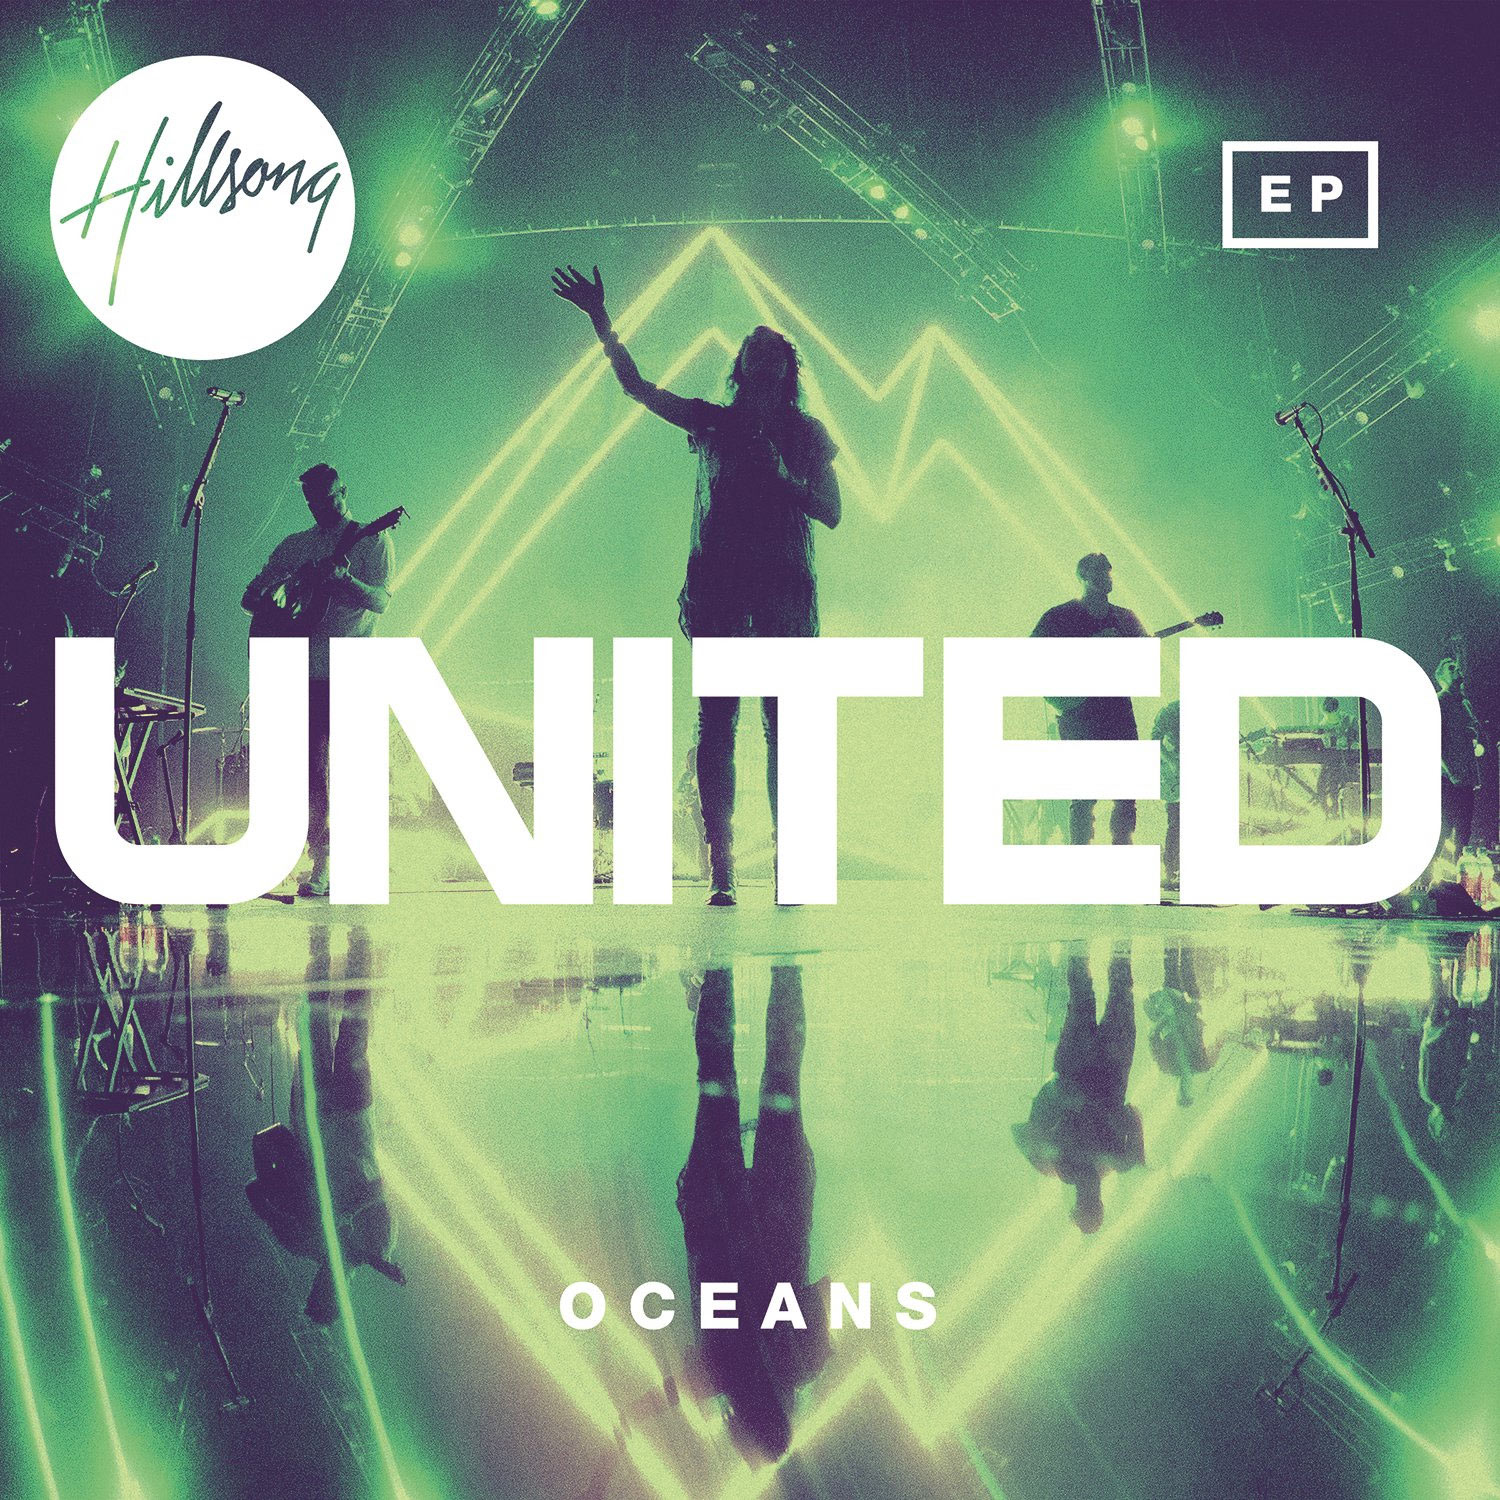 Music News September Hillsong United Releases Oceans Ep Today